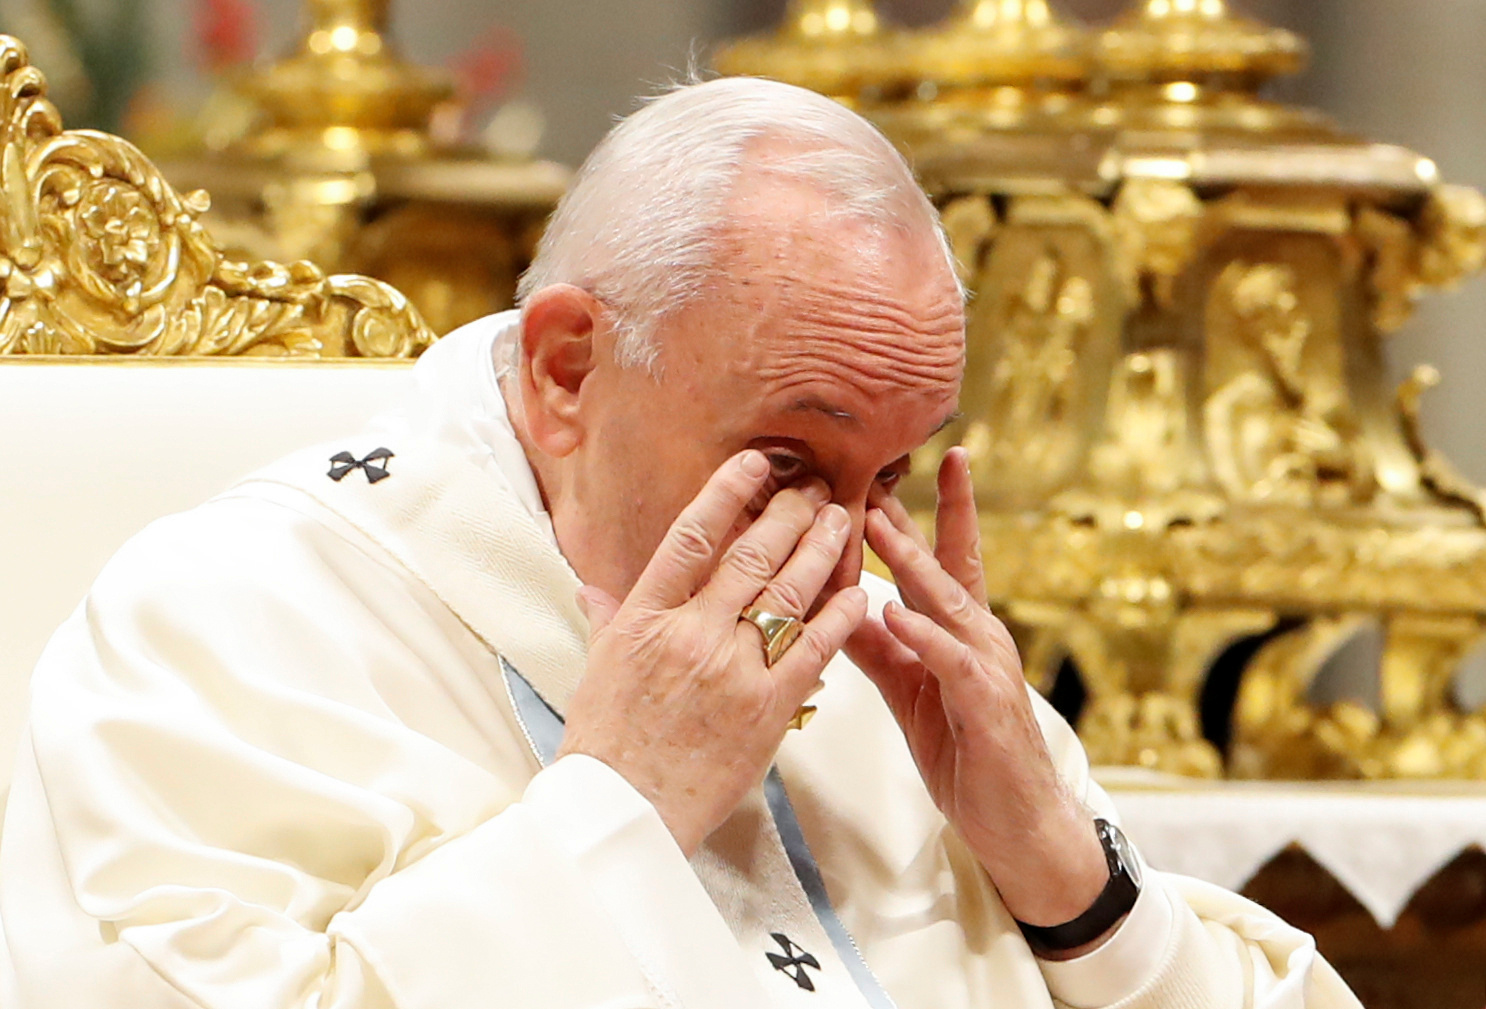 El papa Francisco pide perdón por manotear a una fiel que lo agarró en el Vaticano